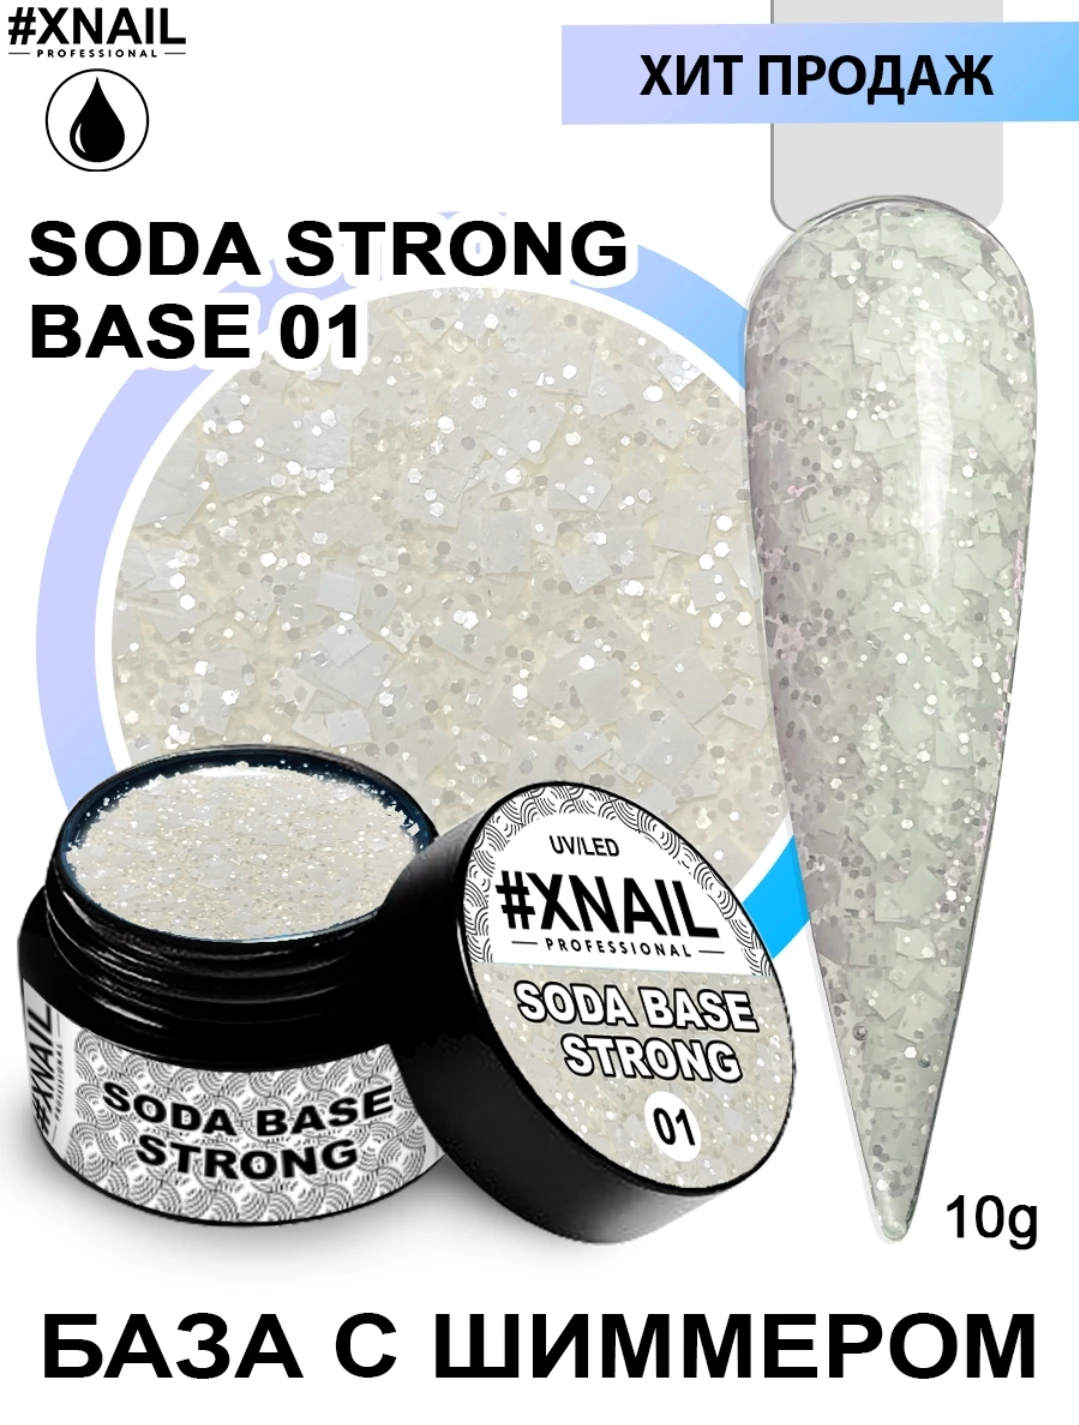 XNAIL Soda Strong Base 10гр. | Красота и здоровье